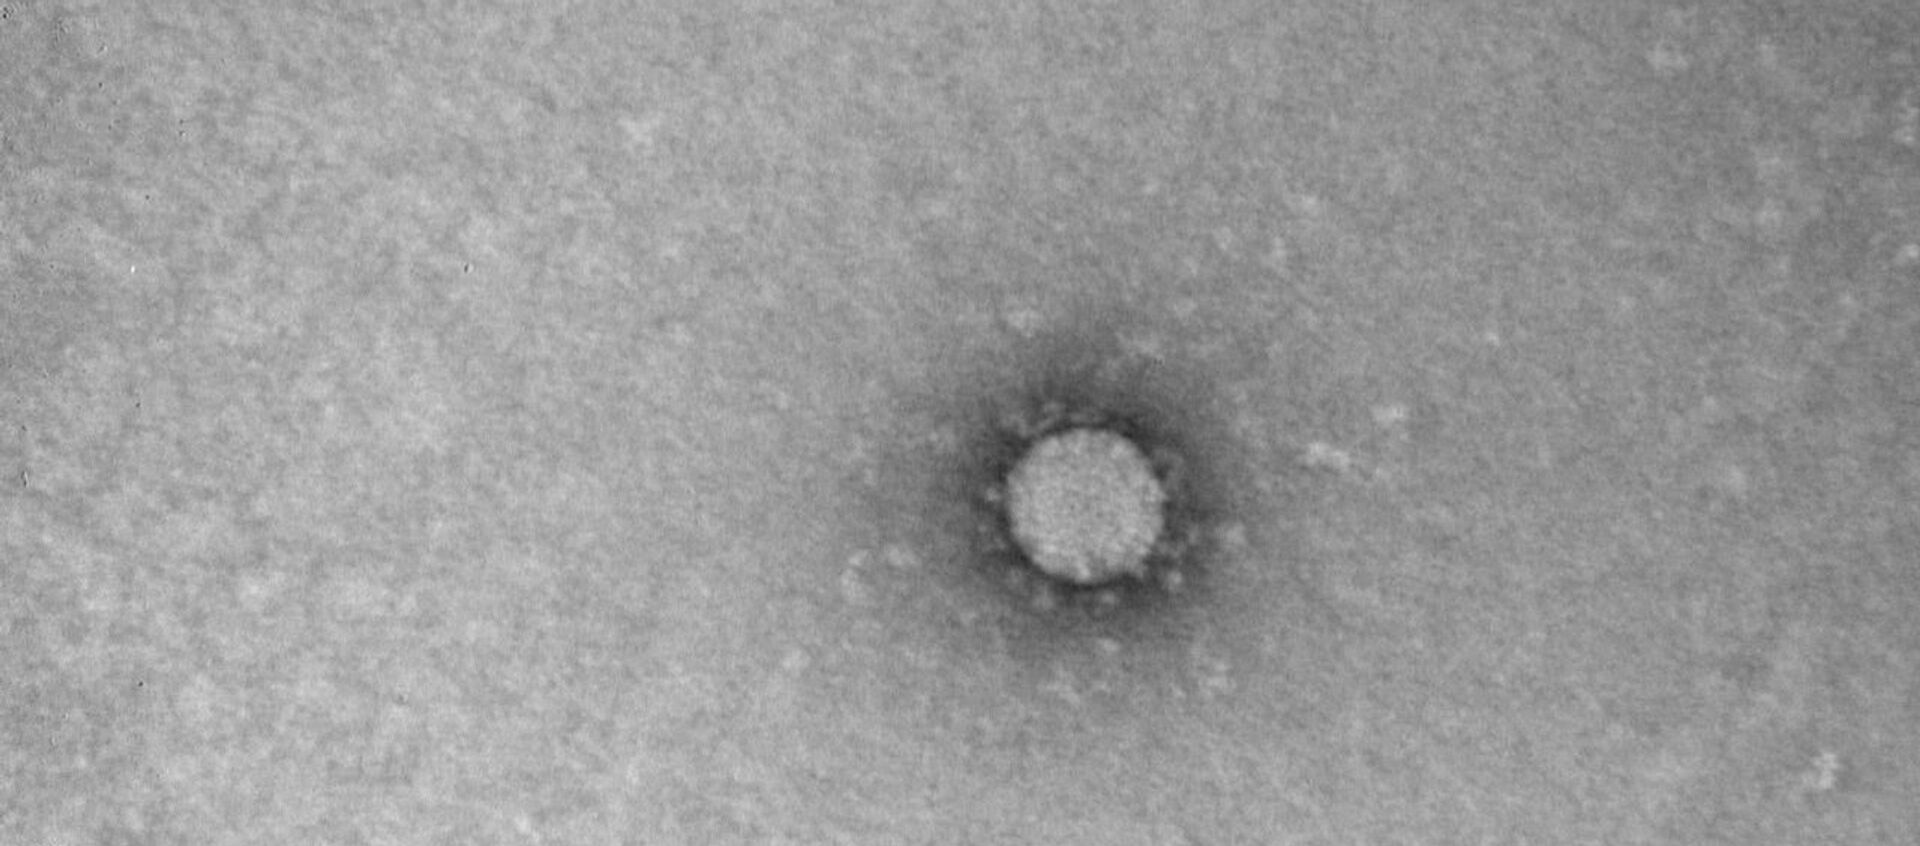  صورة فيروس كورونا - سبوتنيك عربي, 1920, 23.03.2020